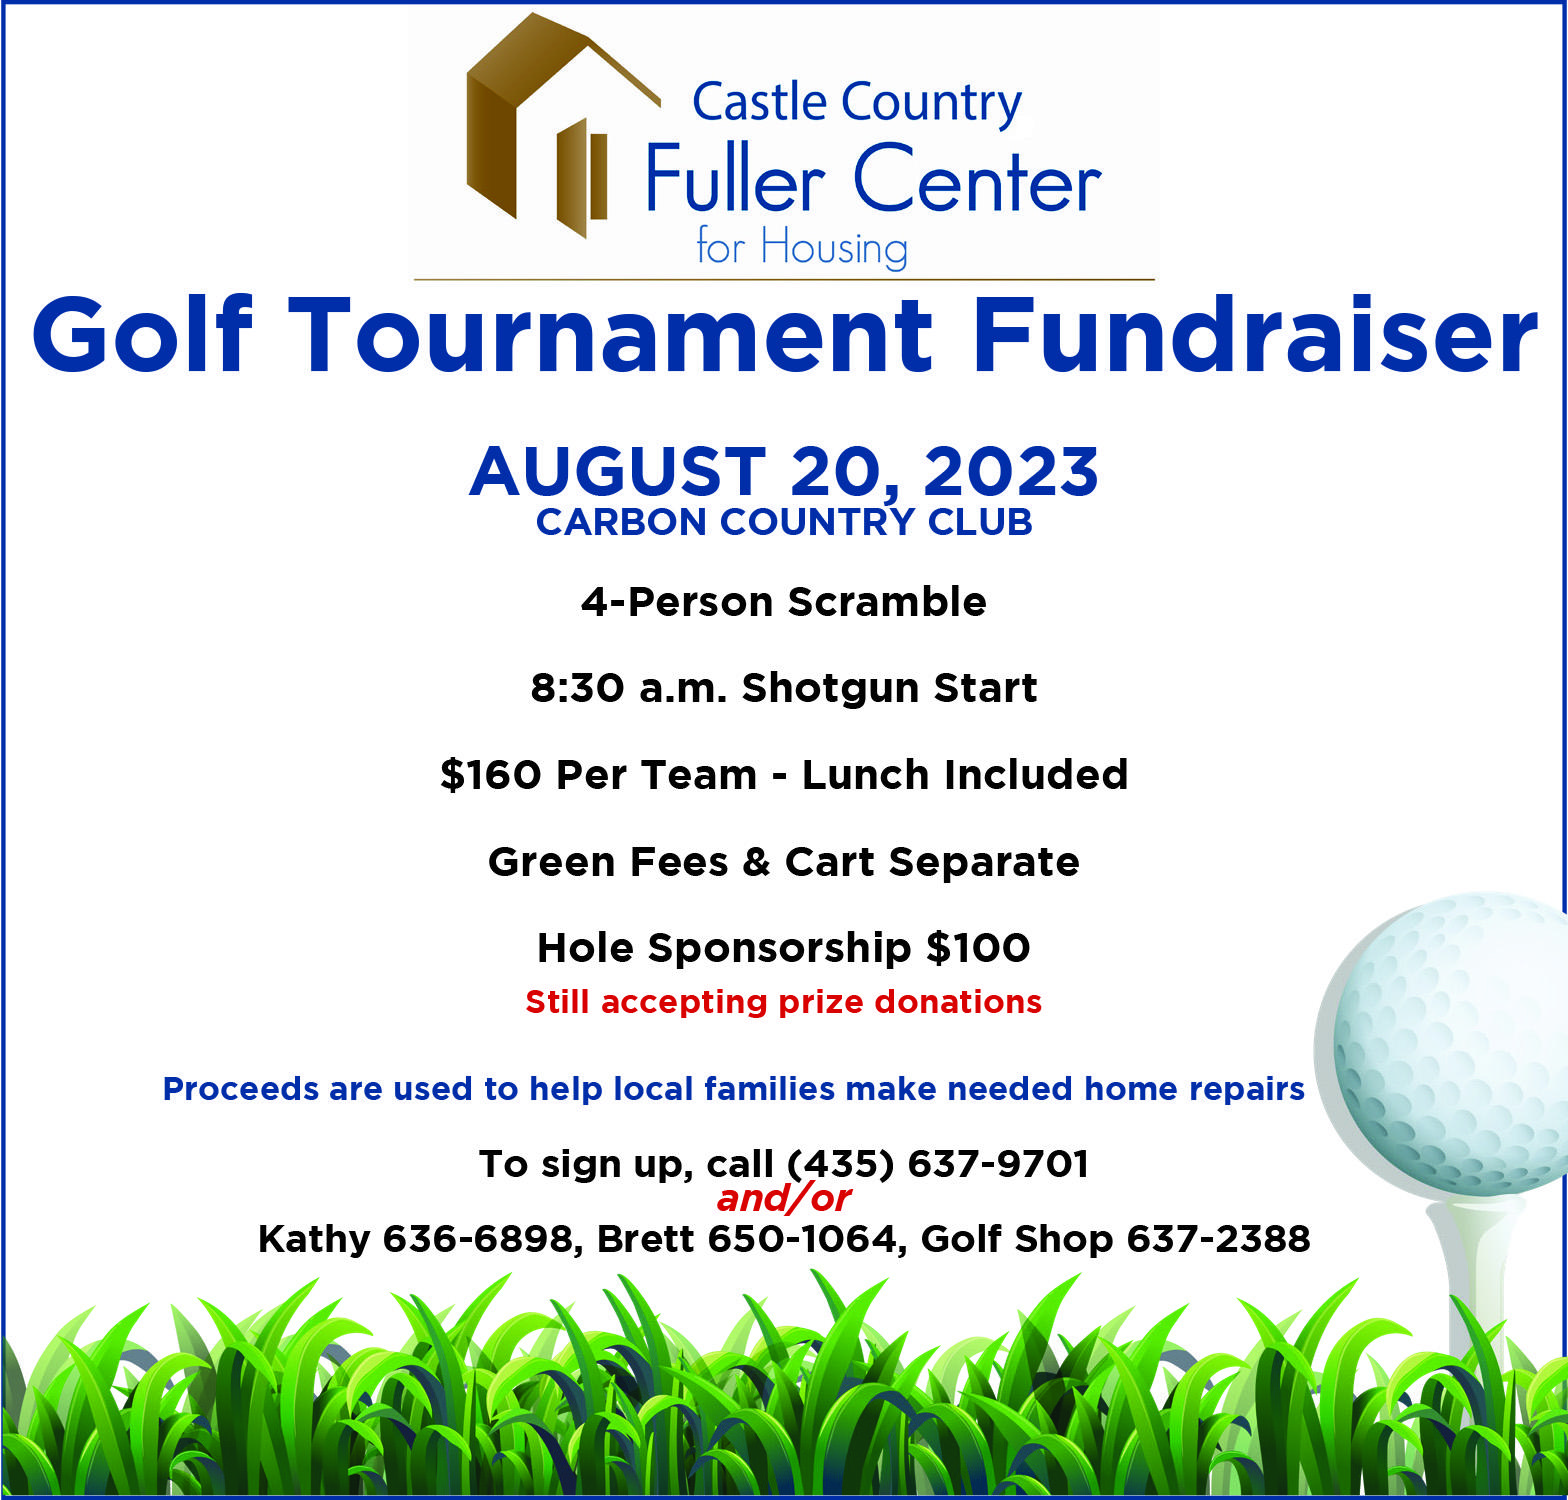 Castle-Country-Fuller-Center-Golf-Tournament-3x5-1.jpg